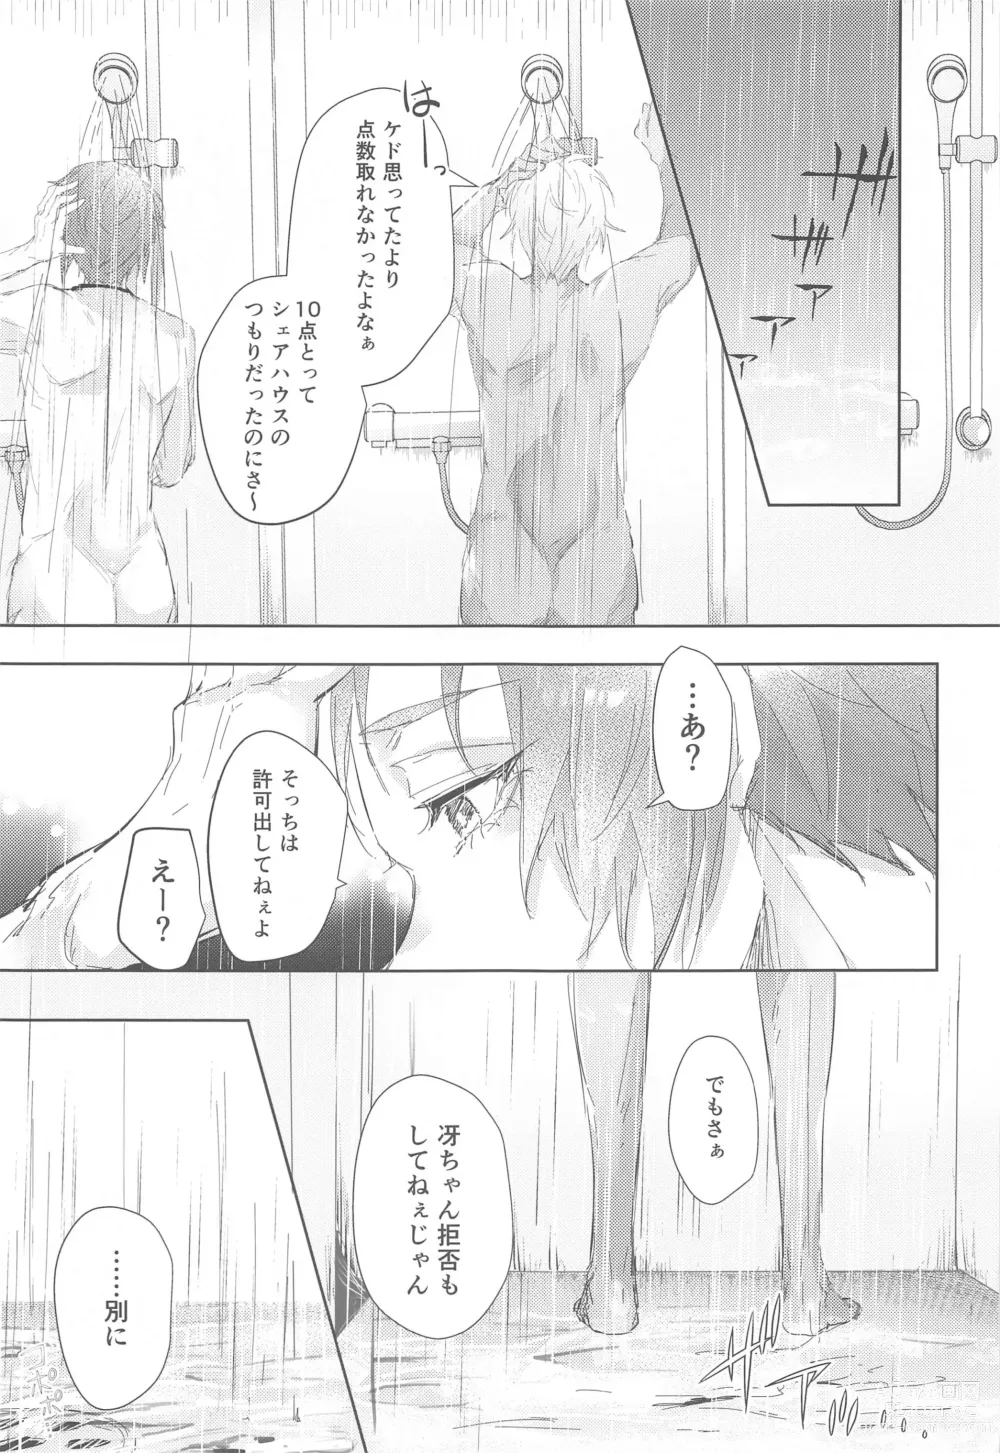 Page 8 of doujinshi Gogo 9-Ji no Sweet Room